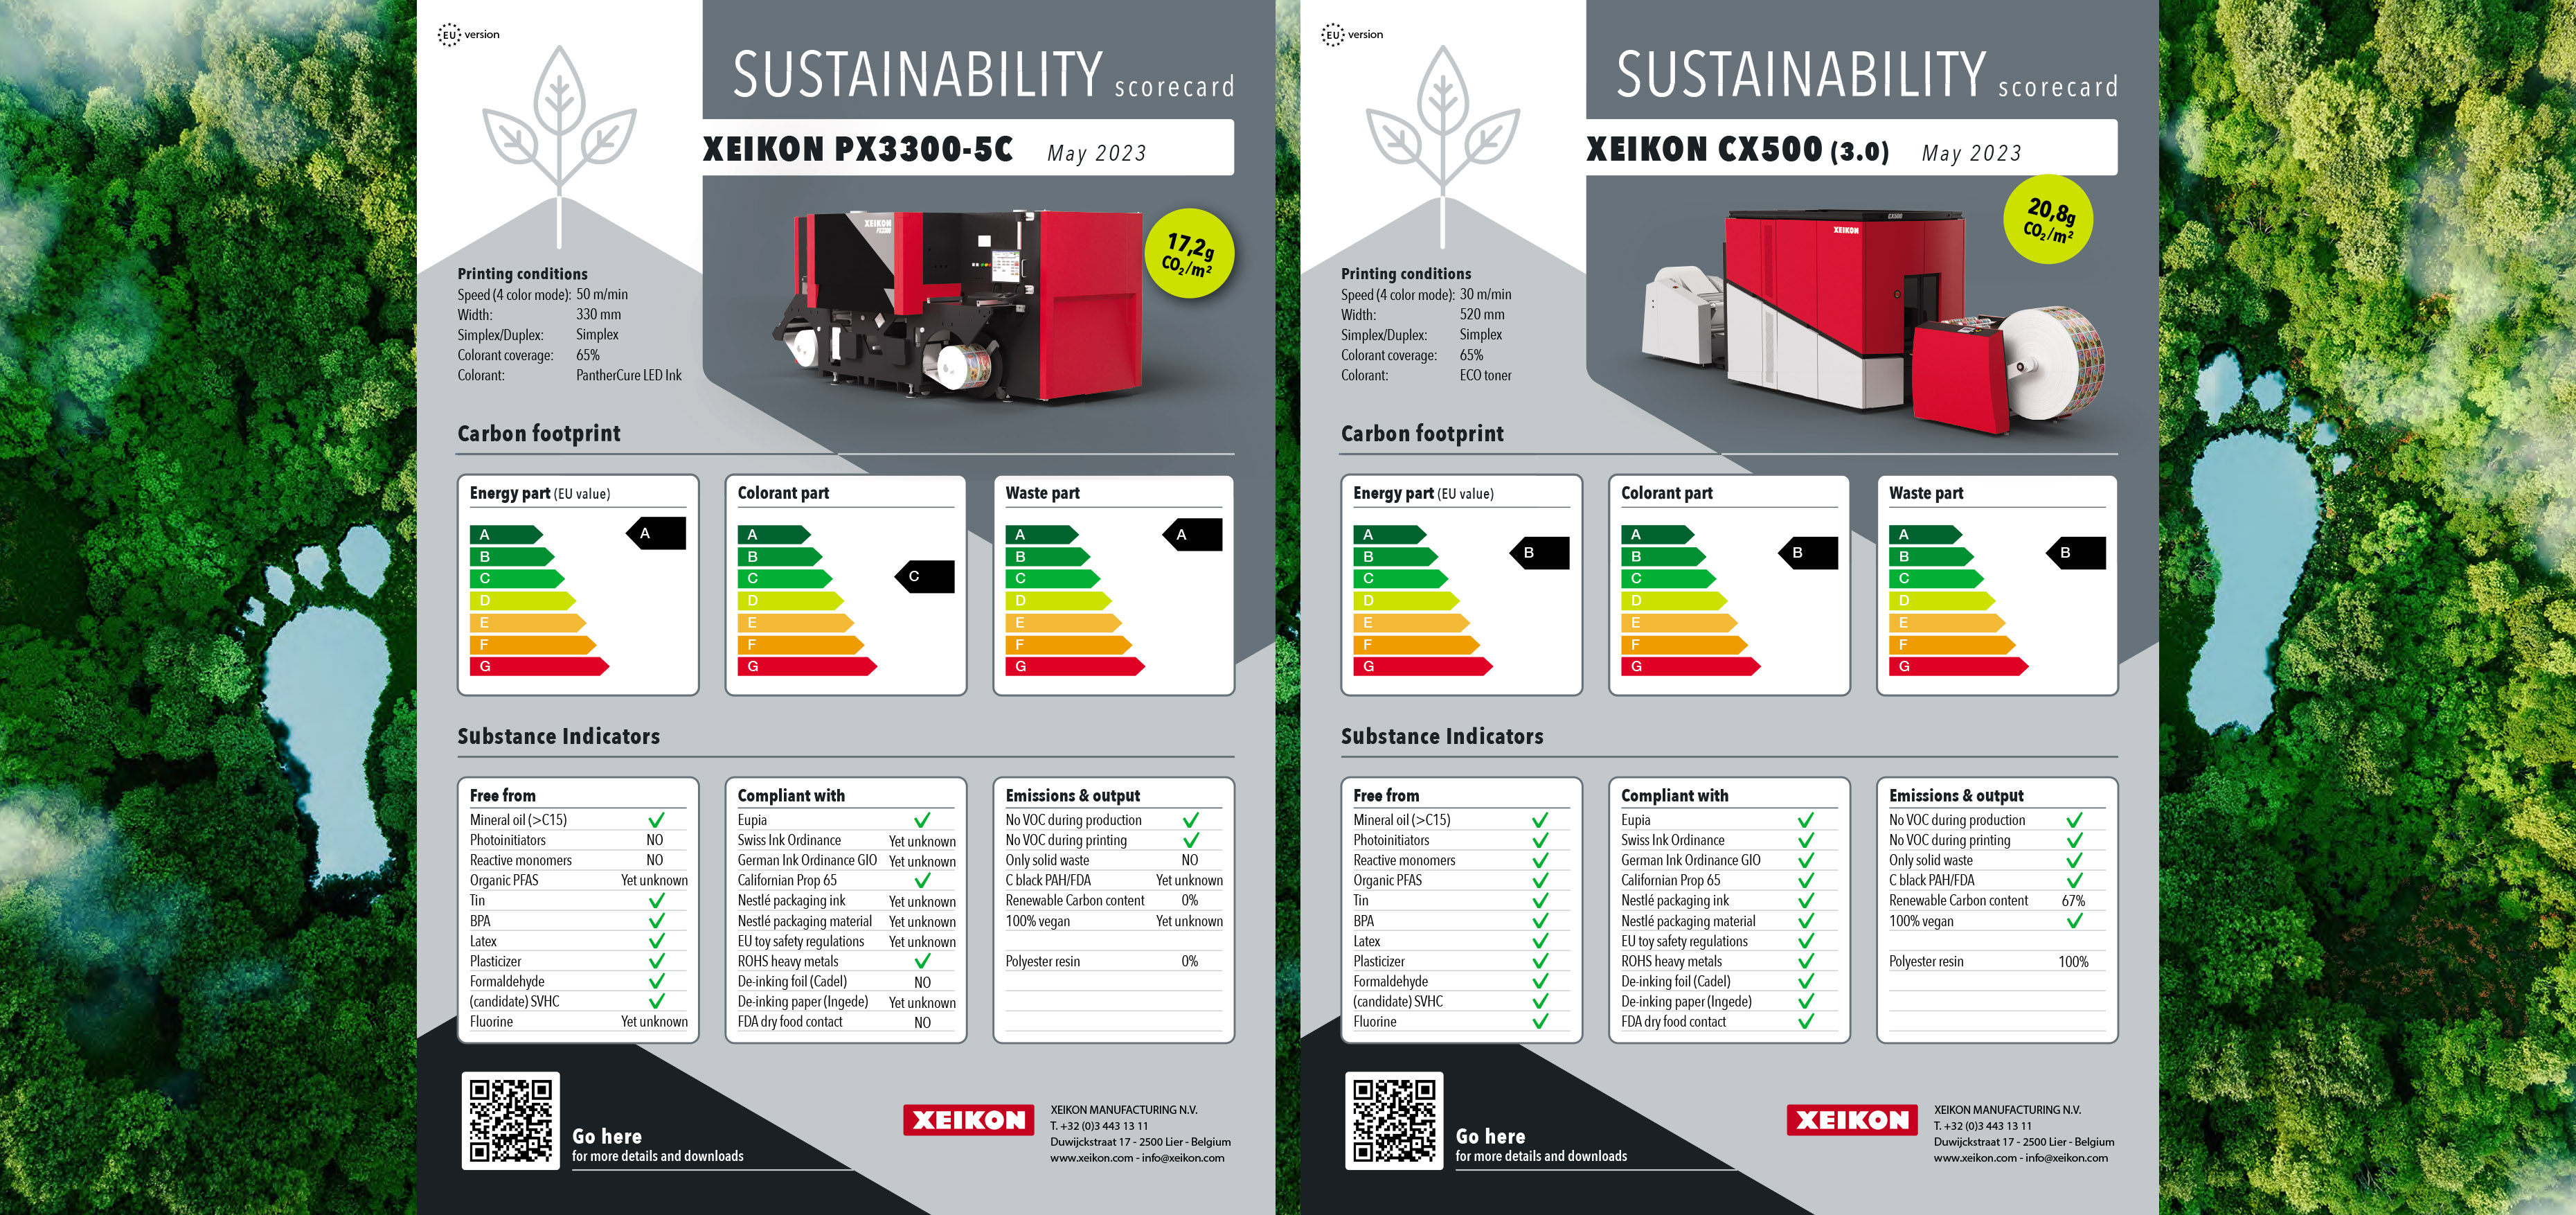 Xeikon inicia criação de um scorecard de sustentabilidade para impressoras digitais